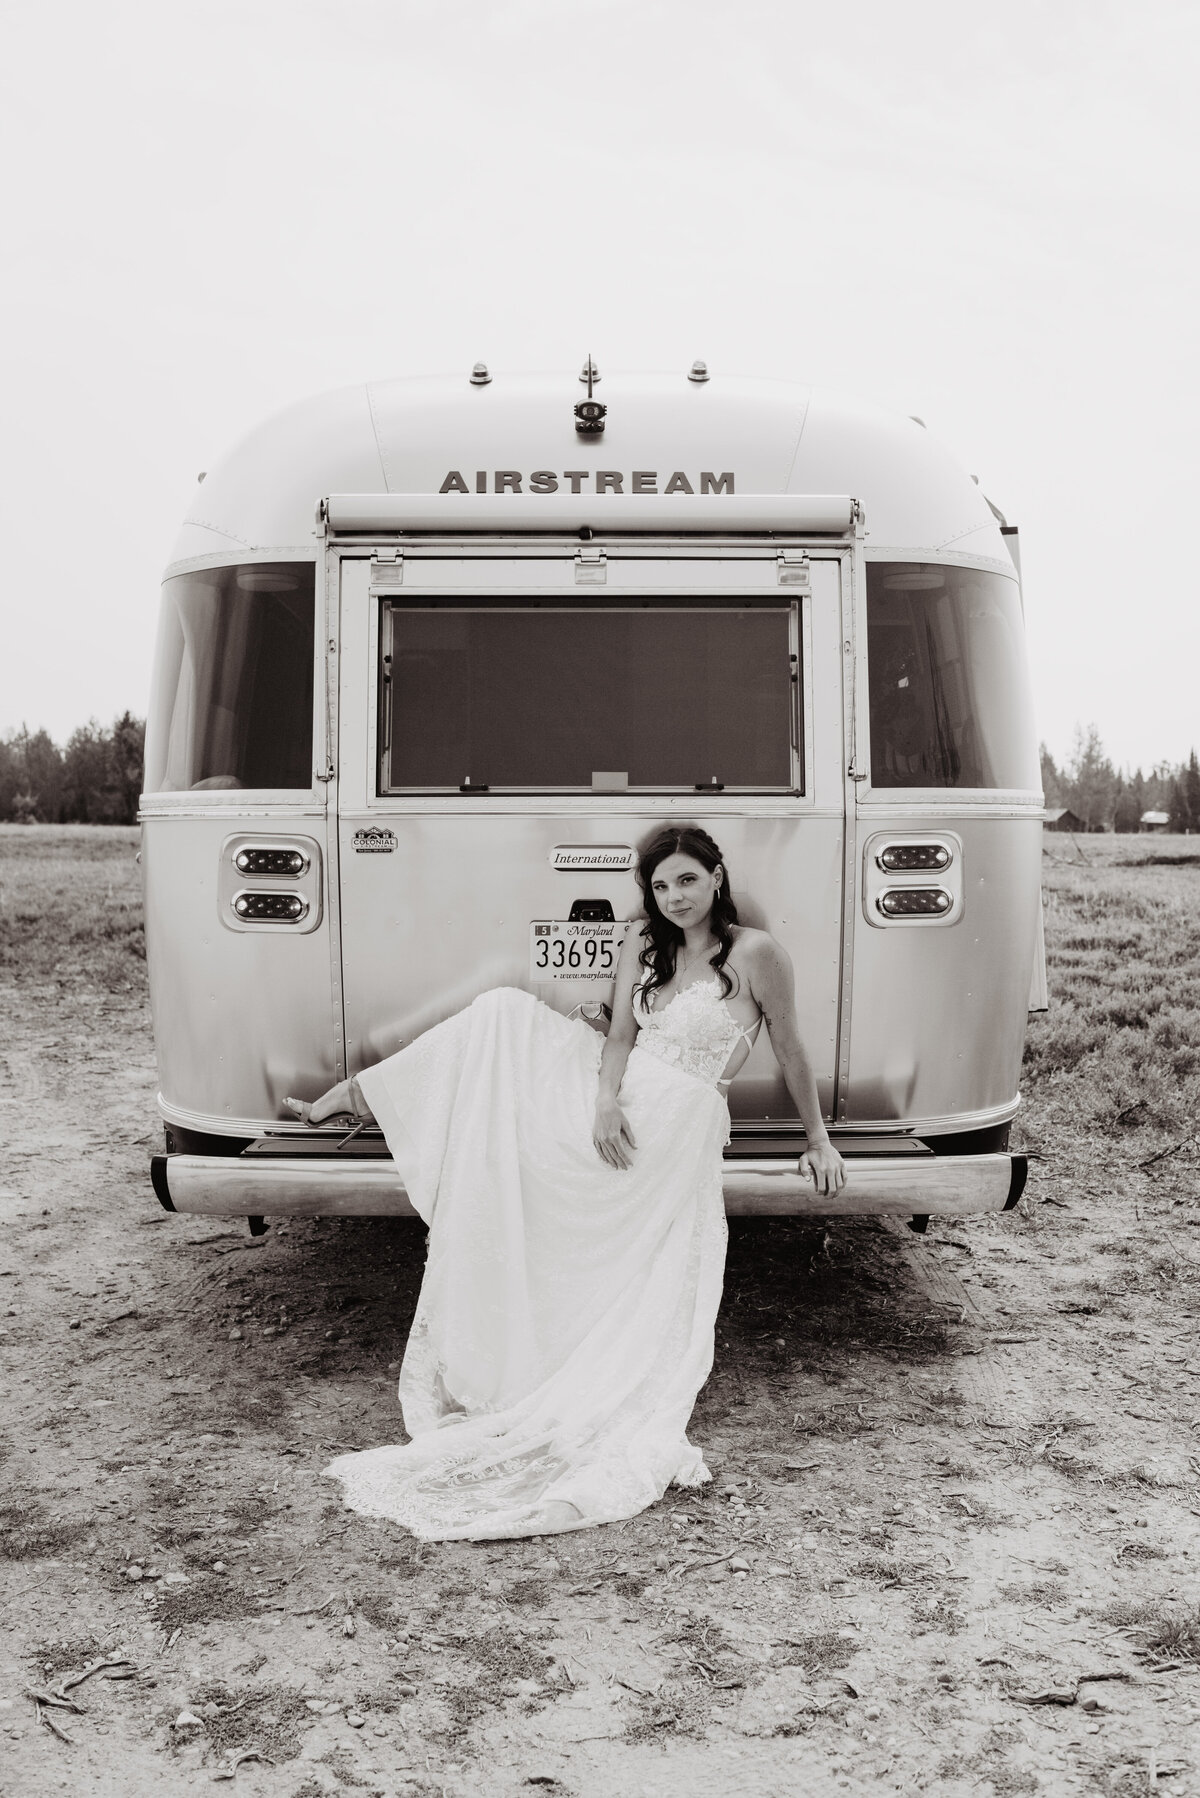 Jackson Hole photographers capture bride sitting on airstream